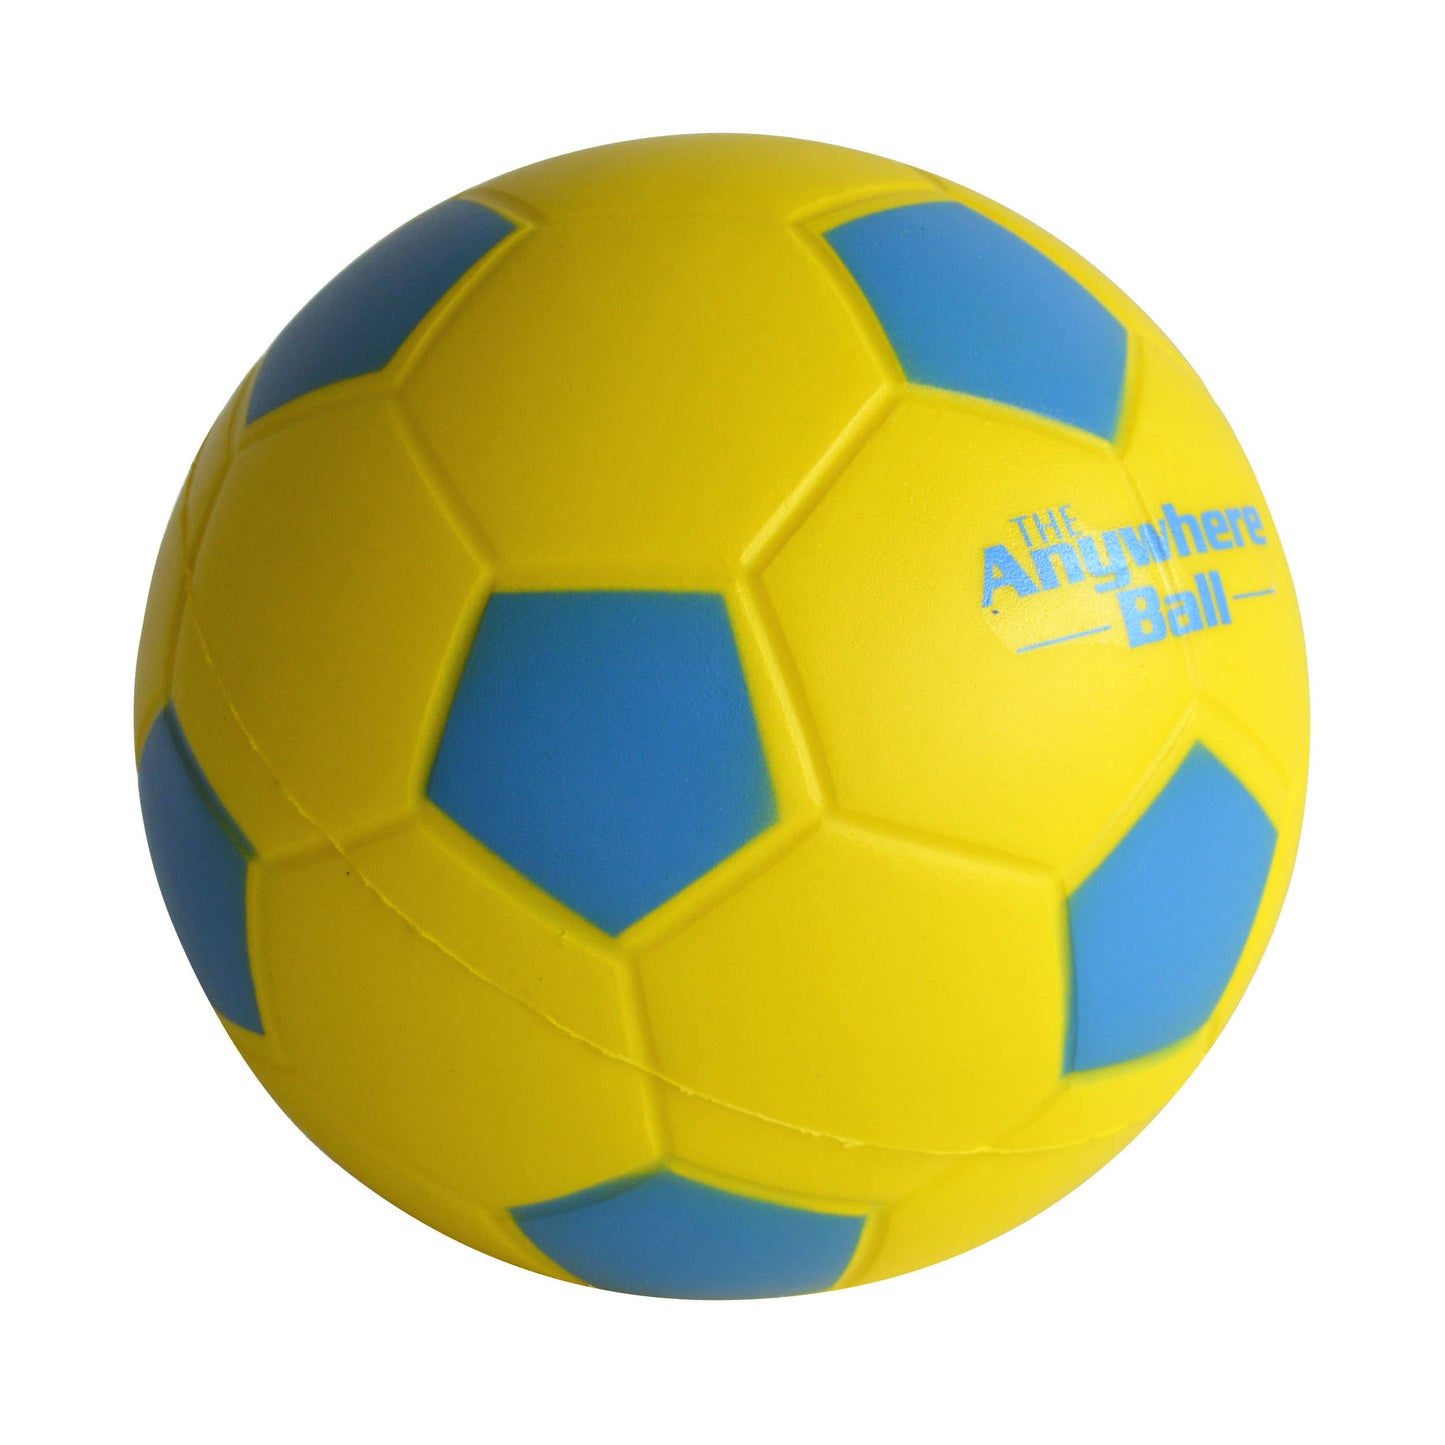 Anywhere Mini Soccer Ball